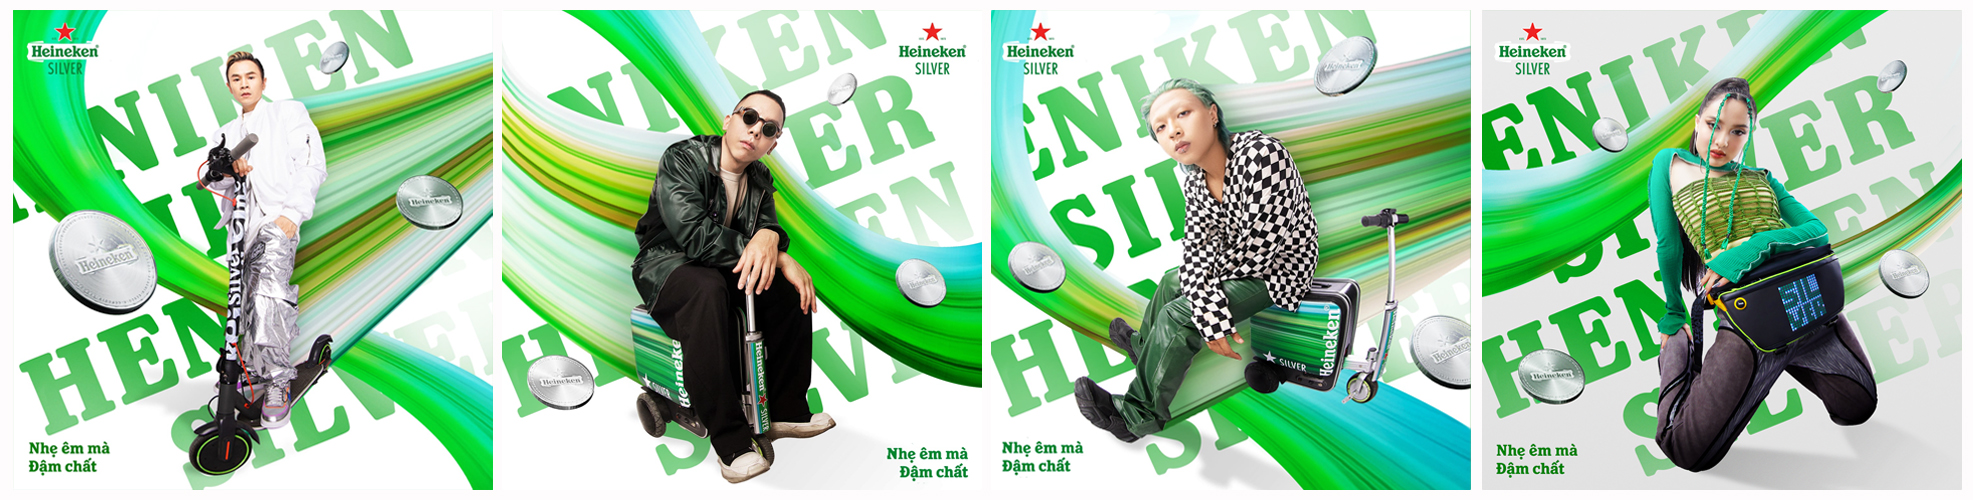 Hành trình người trẻ mở lối cuộc vui thời thượng cùng Heineken Silver-4